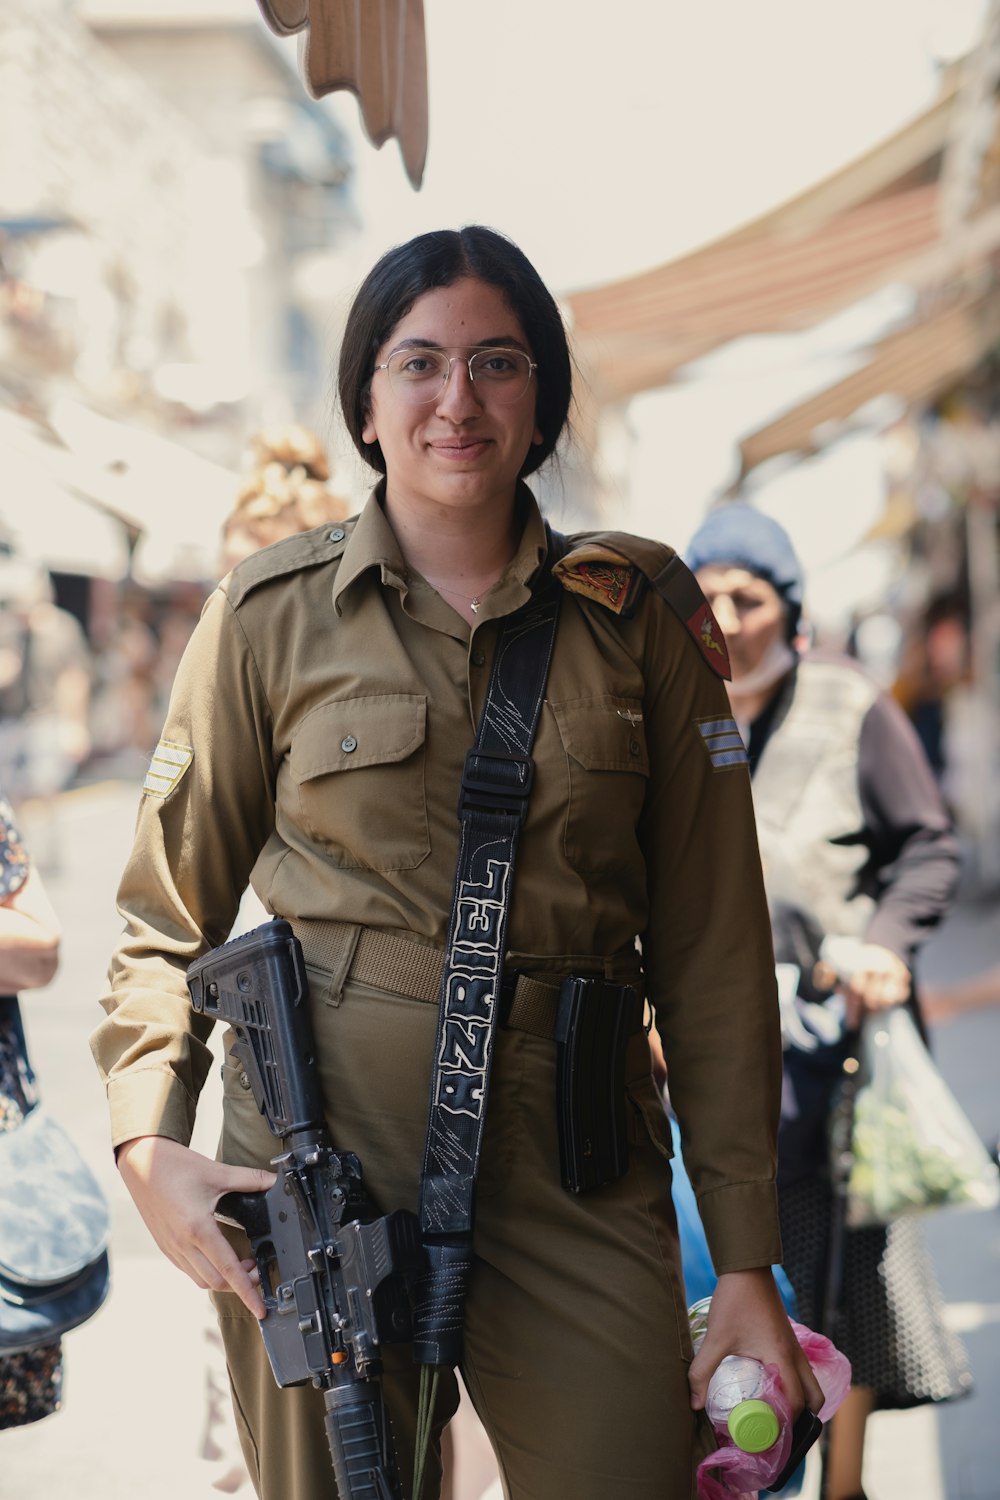 Eine Frau in Uniform hält eine Waffe